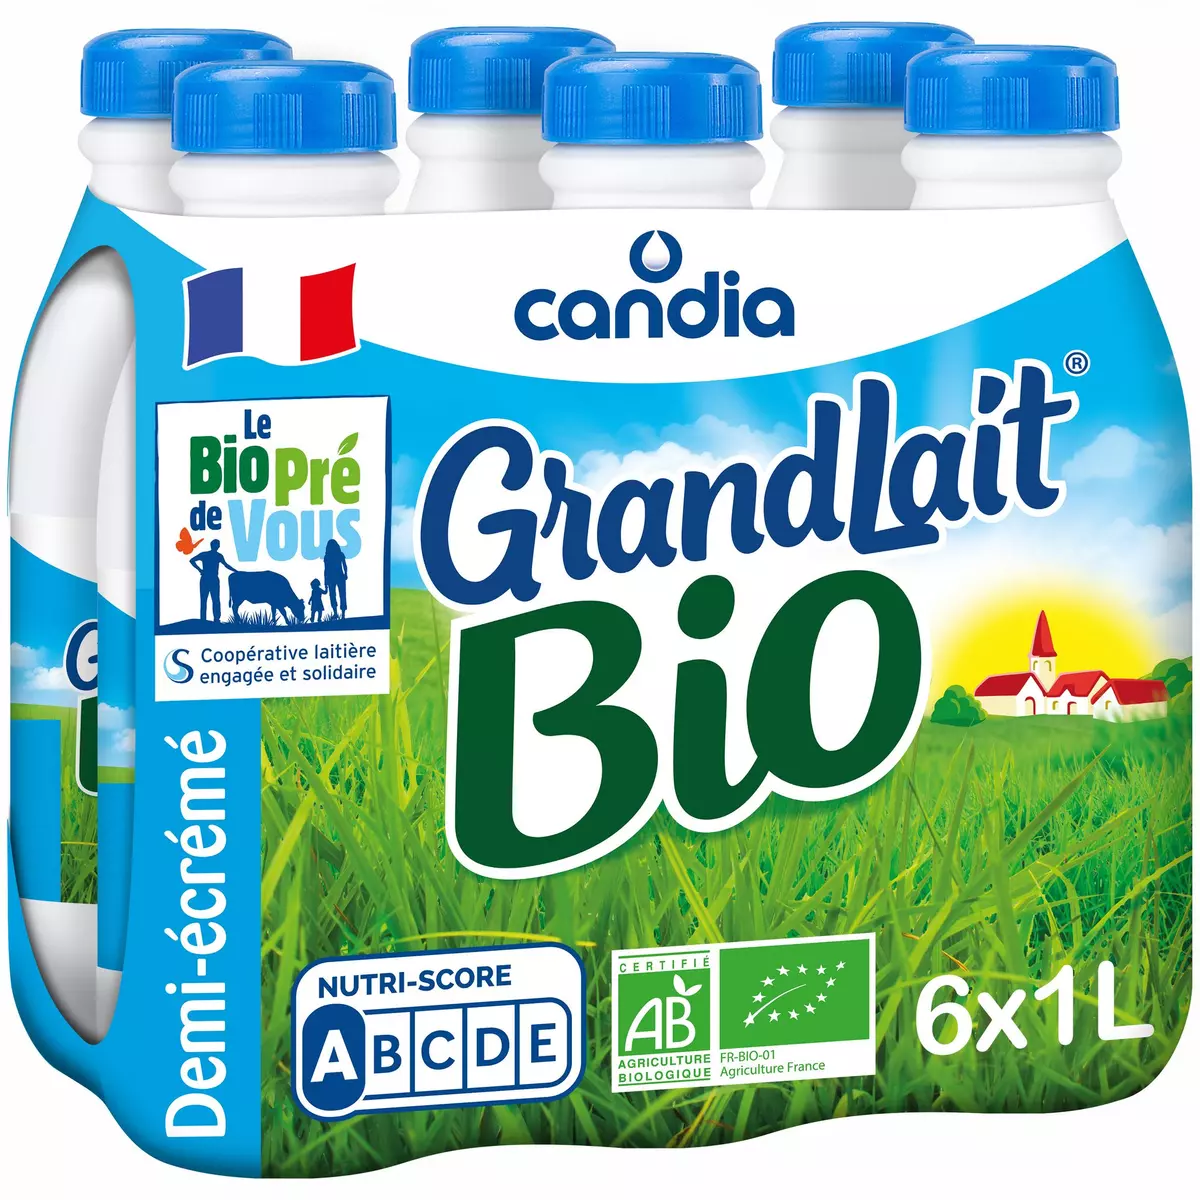 CANDIA Grandlait - Lait demi-écrémé UHT bio 6x1L